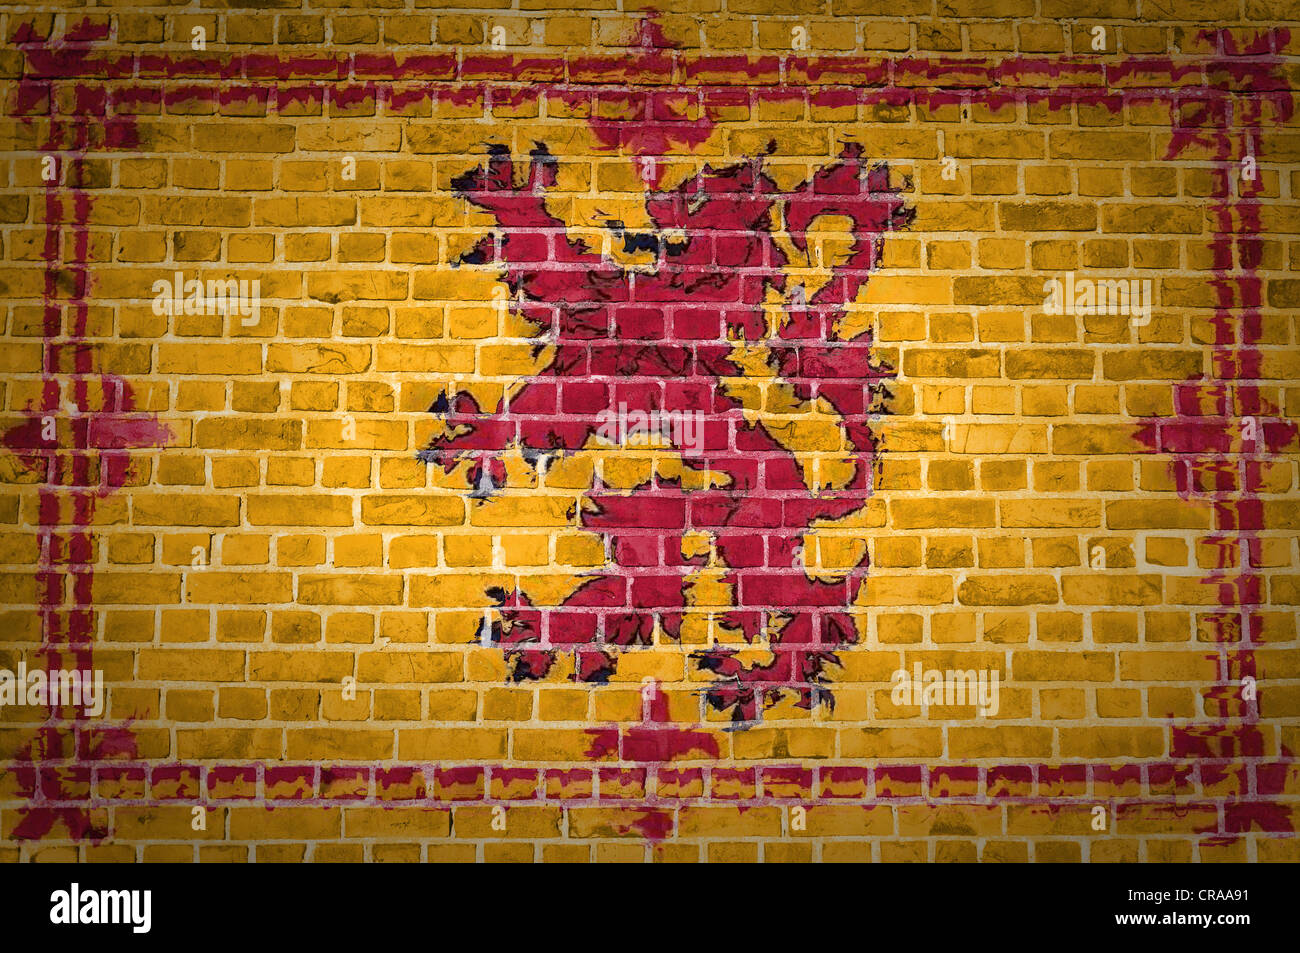 Una imagen de la bandera de Escocia león rampante pintado sobre una pared de ladrillos en una ubicación urbana Foto de stock